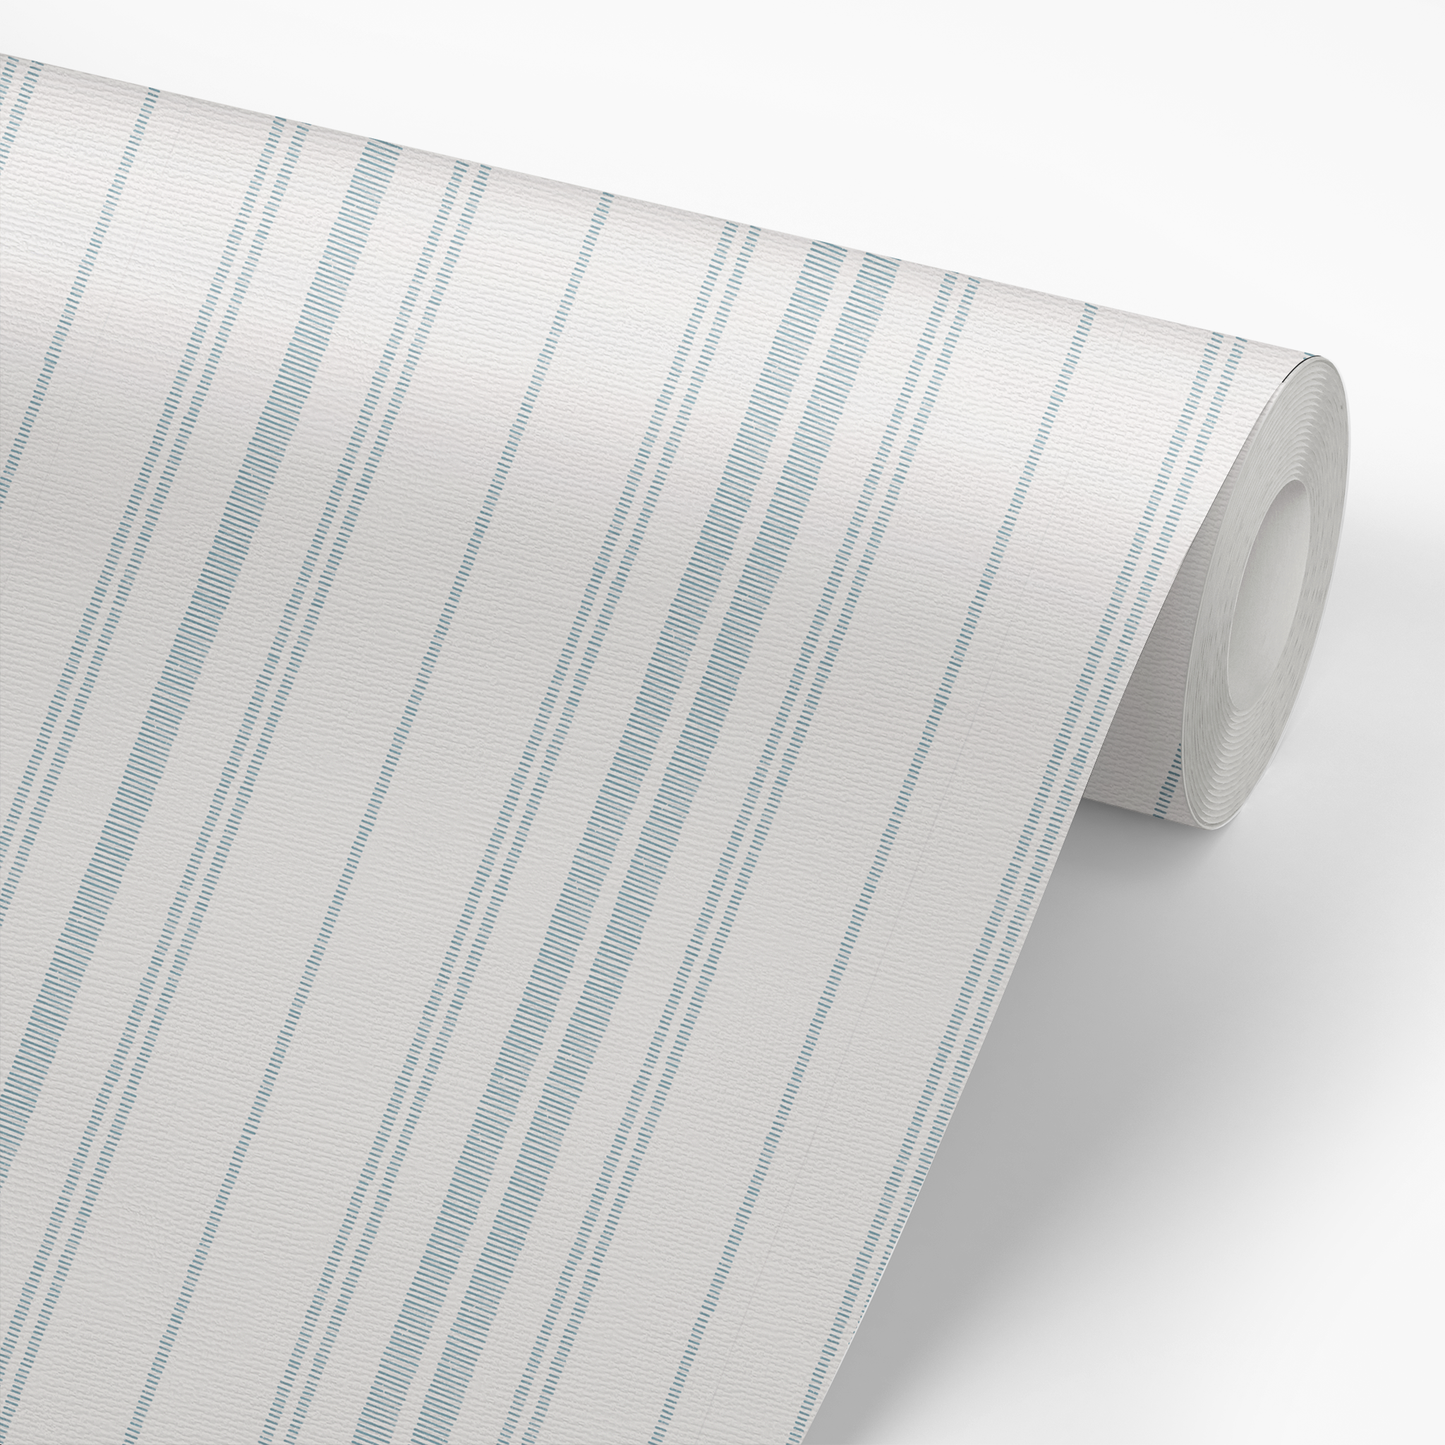 Ticking Stripe Wallpaper - Dusty Blue